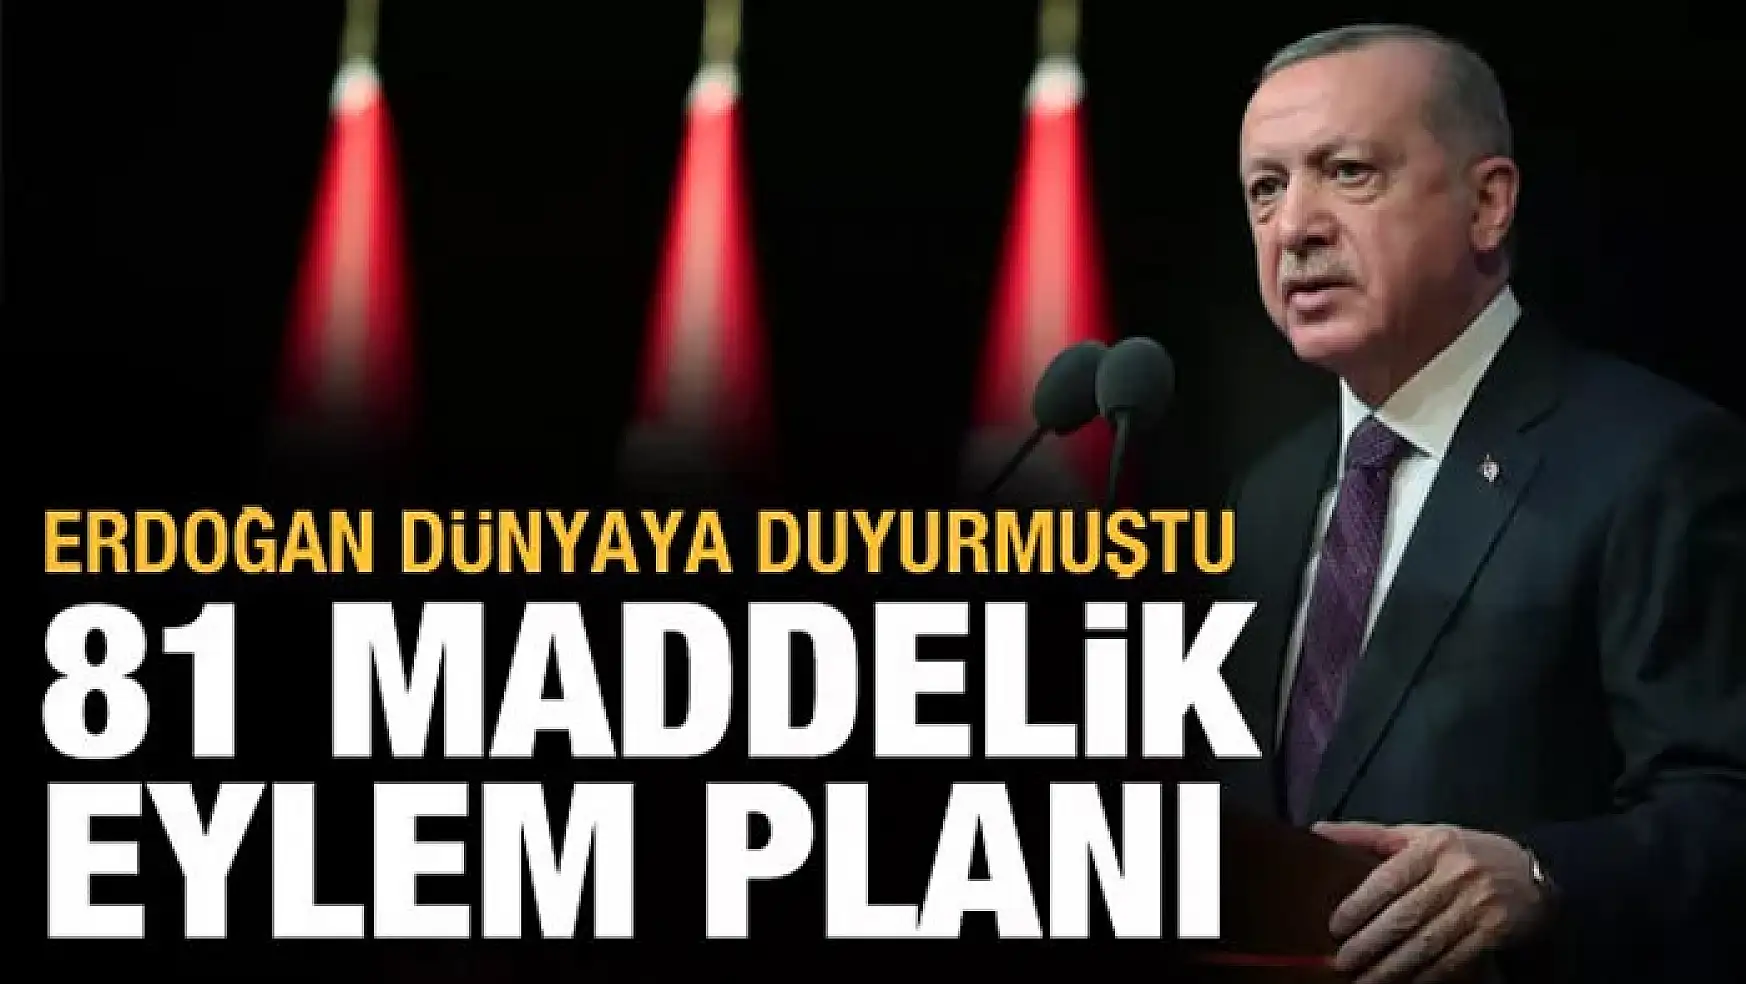 Erdoğan Meclis'e geleceğini açıklamıştı: İklim Anlaşması için 9 başlıkta 81 maddelik eylem